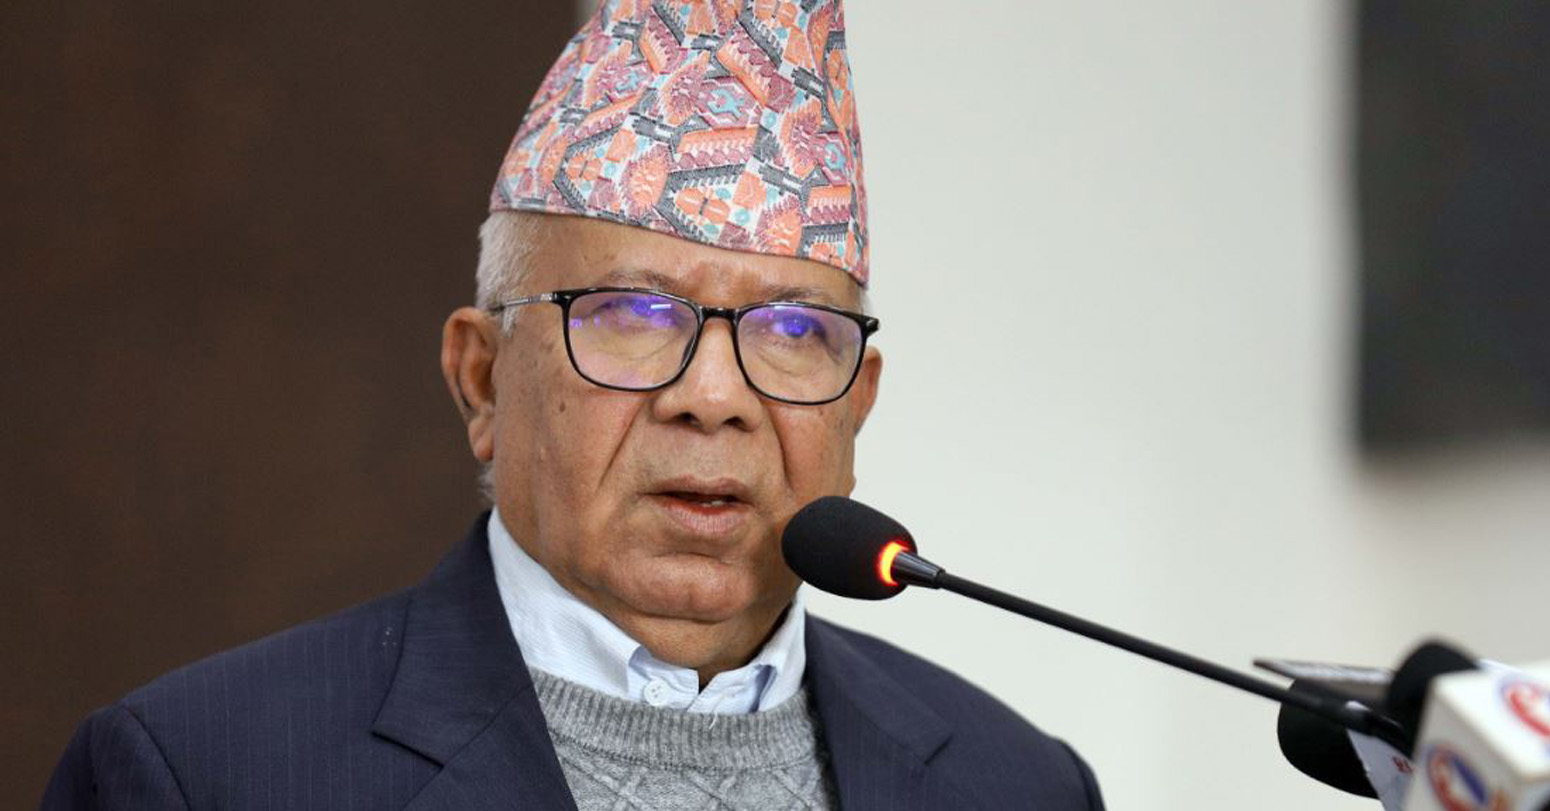 सत्ता गठबन्धनबाट जनताका दुःख पार लाग्नेकुरा सोच्न सकिँदैन : अध्यक्ष नेपाल